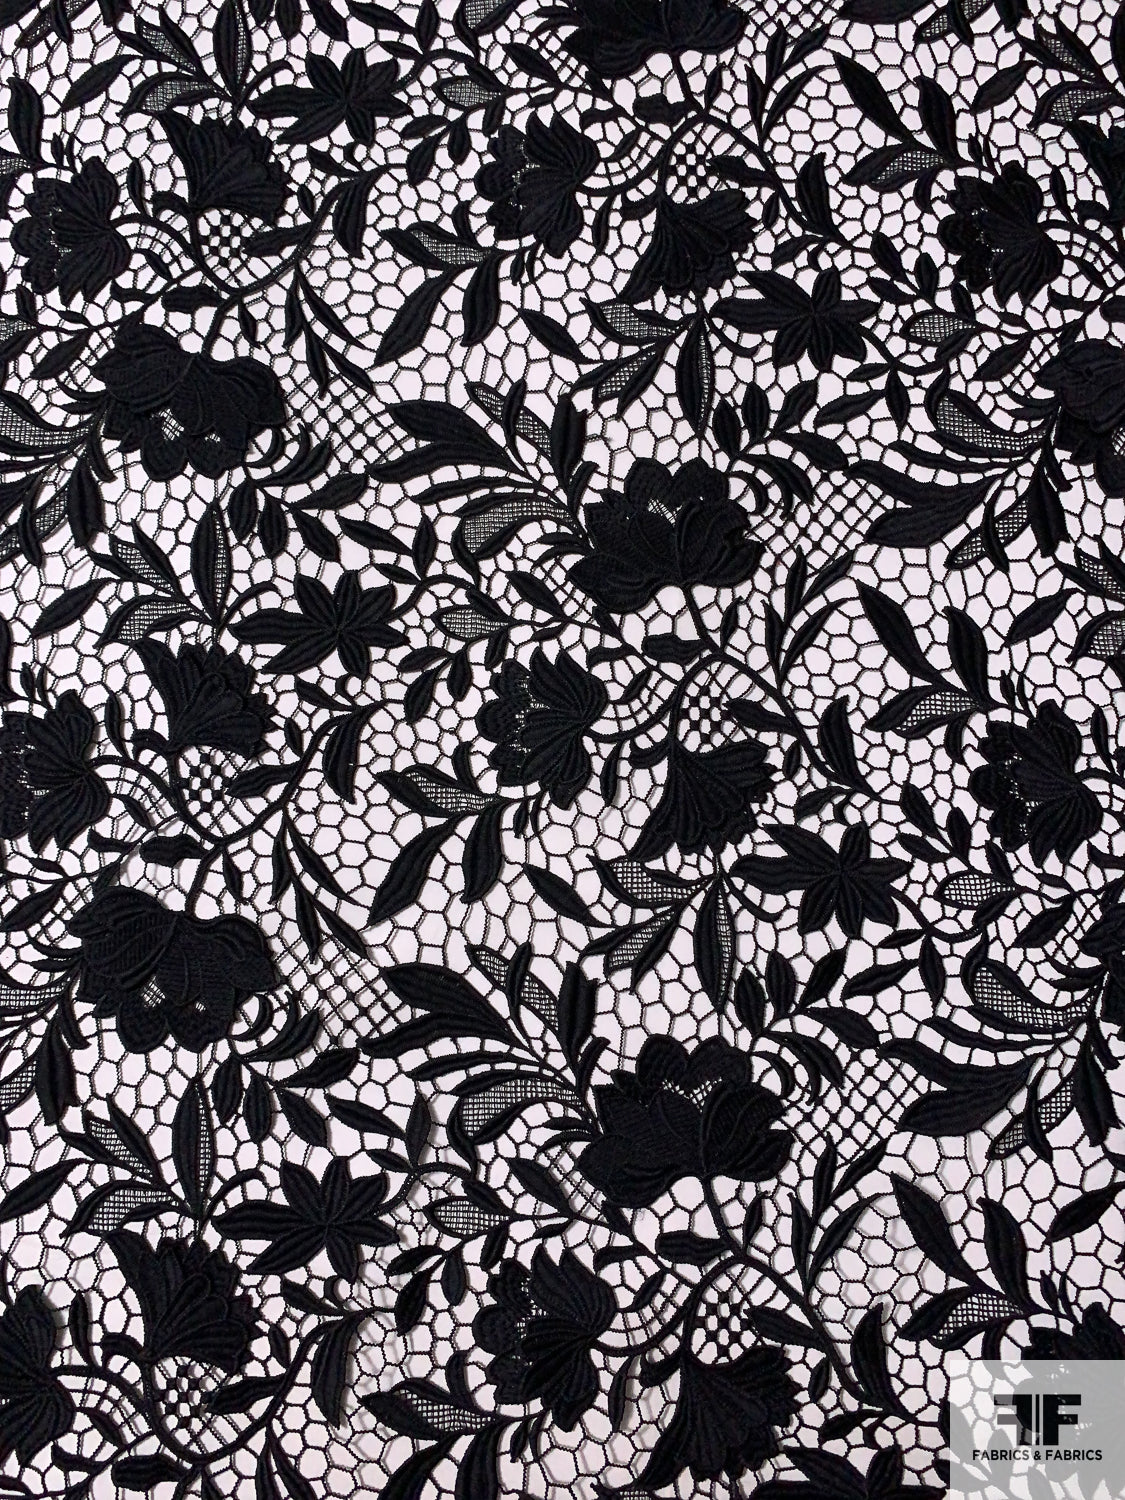 Lace – Black Floral Design